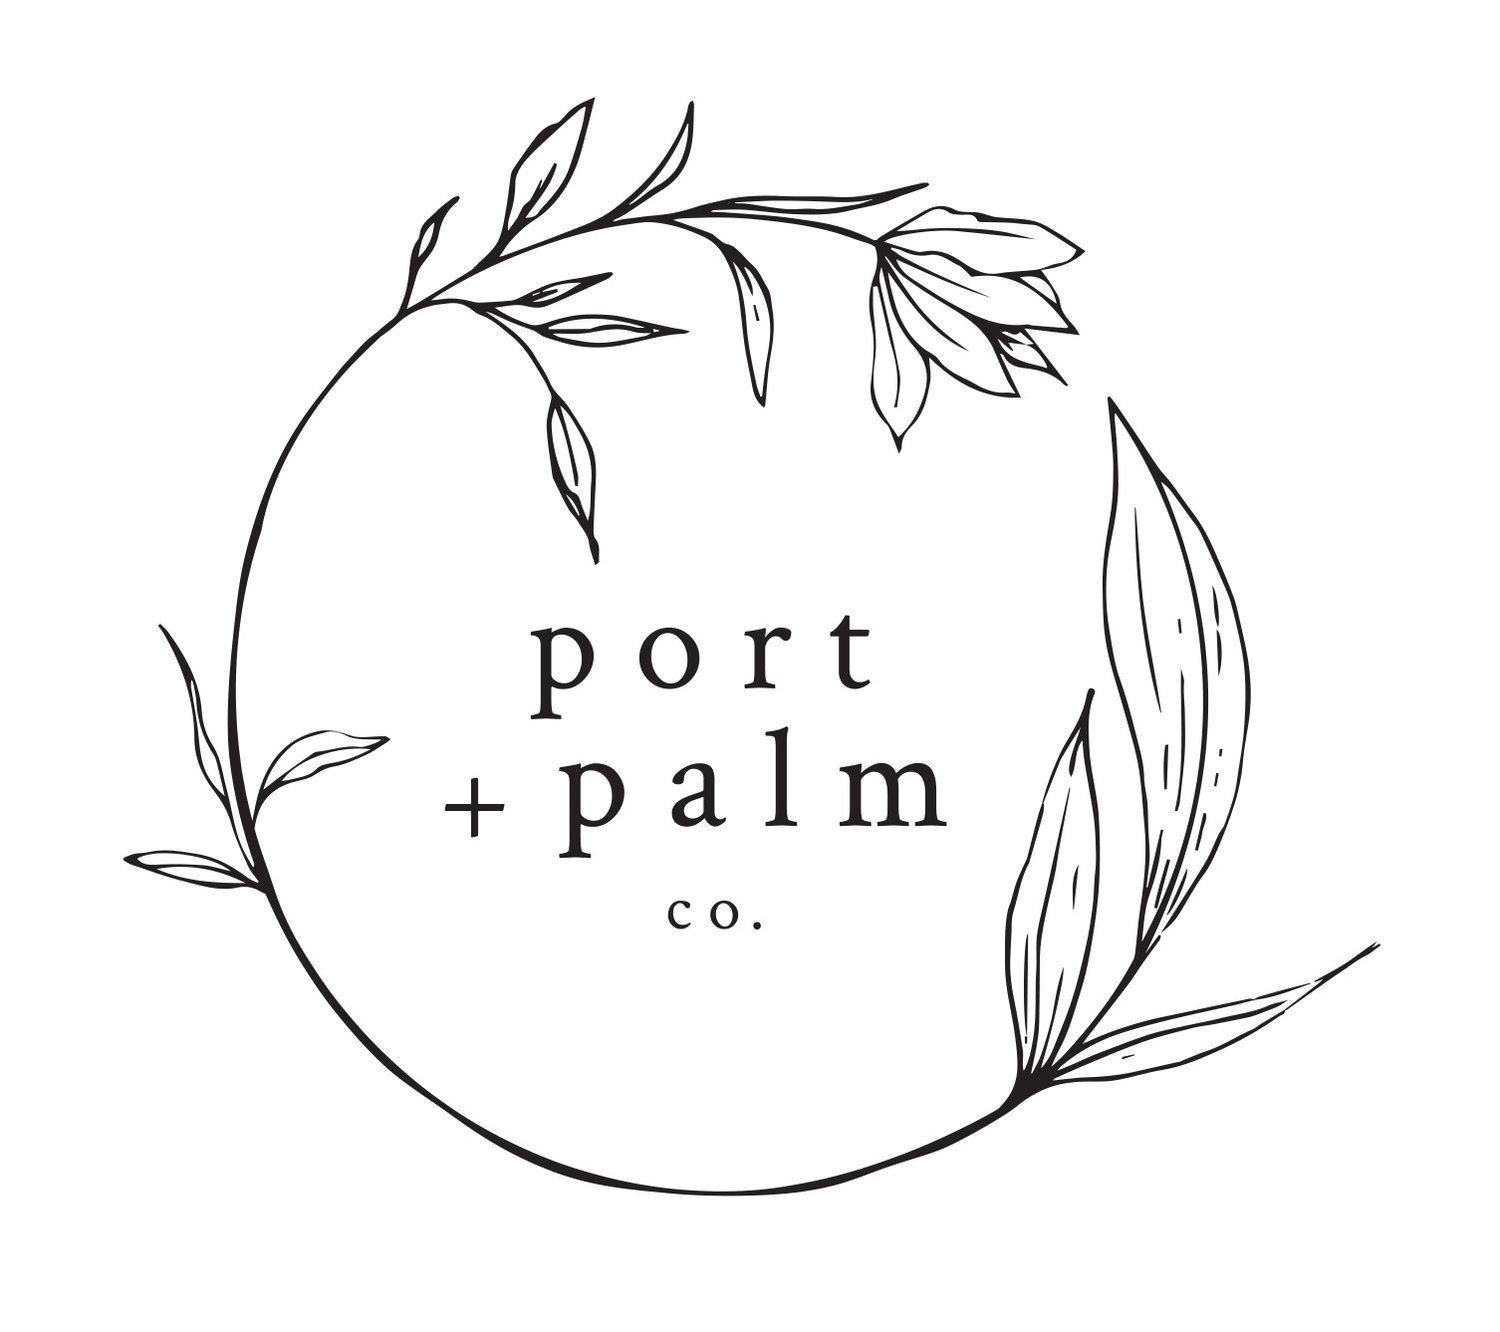 Palmco Logo - Port + Palm Co. - Floral Designer